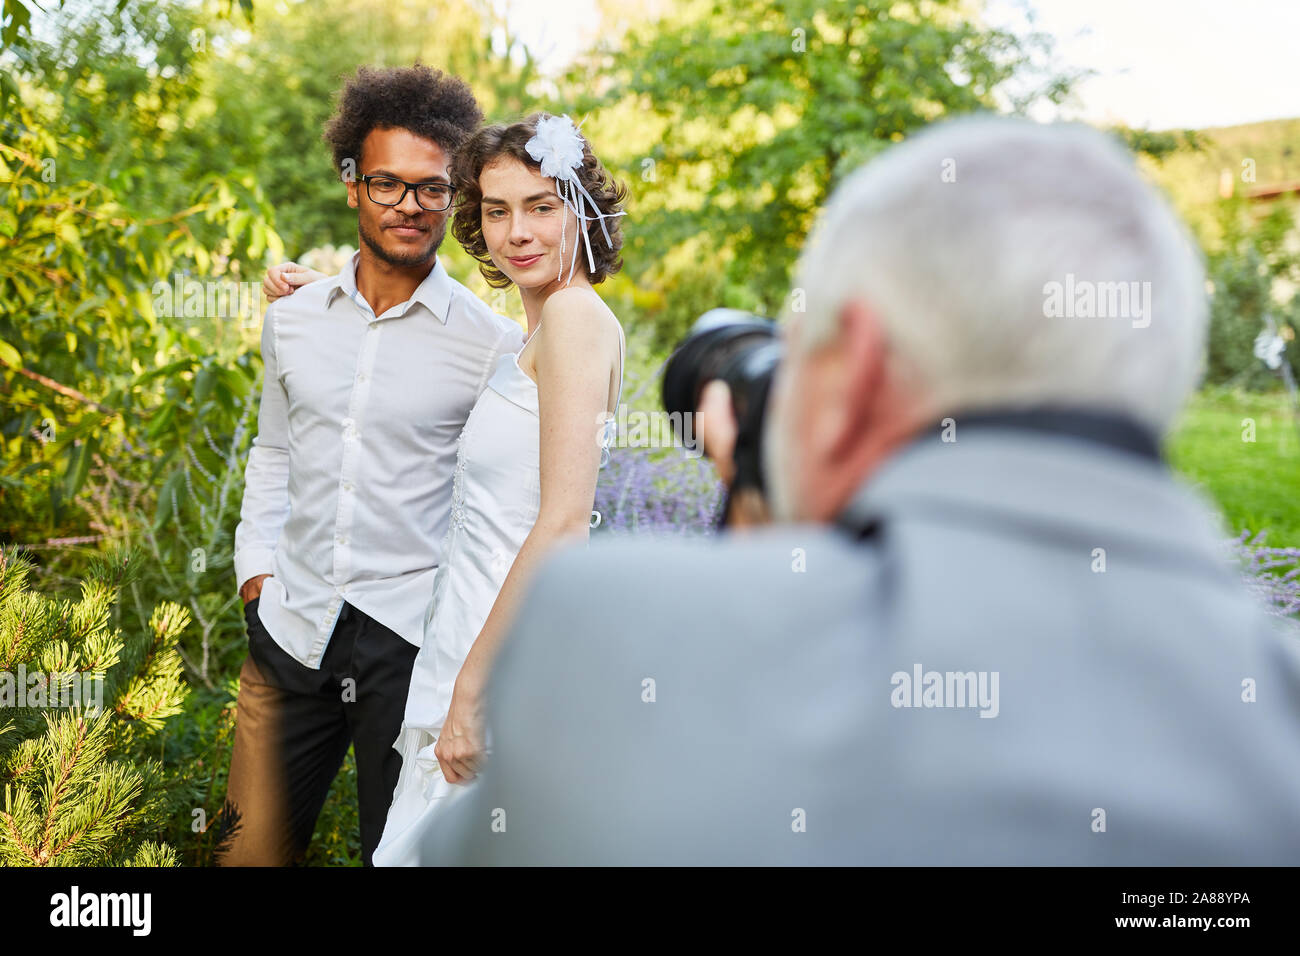 Photographies photographe de mariage jeunes mariés dans la nature sur le jour du mariage Banque D'Images